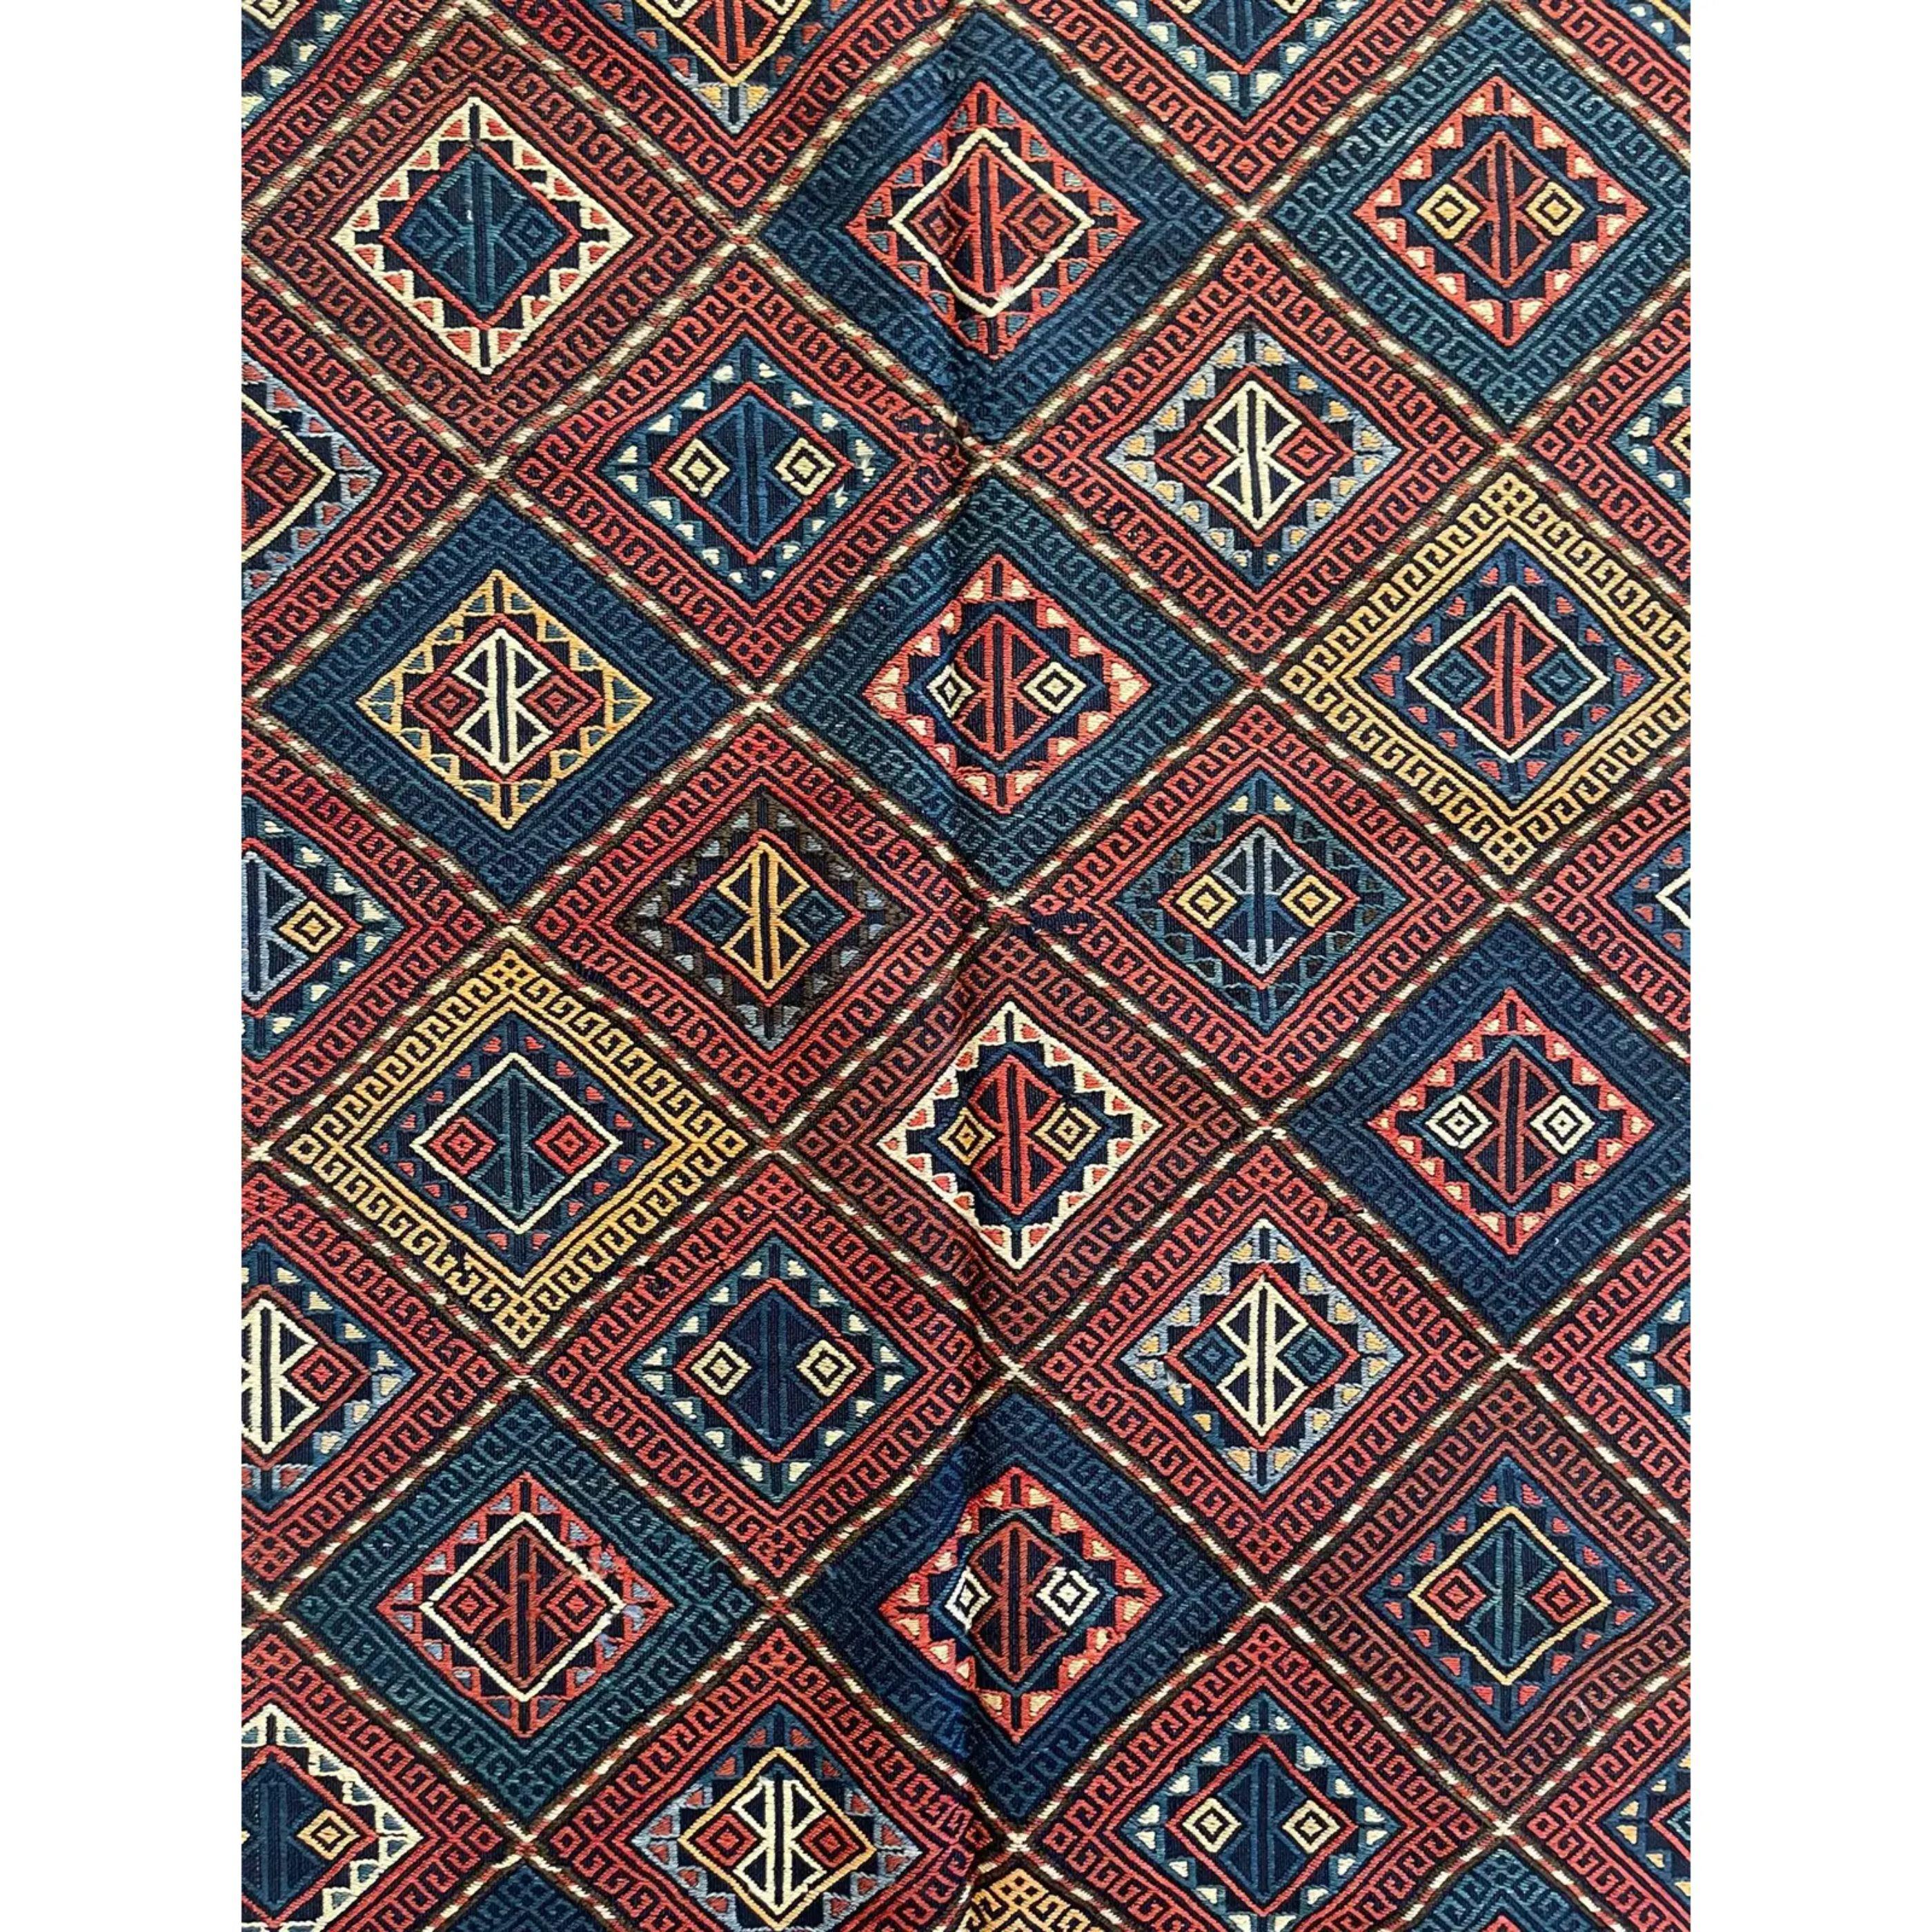 Tapis Soumak (également orthographié Sumak) - Cette technique de construction permet d'obtenir un tapis à tissage plat qui est épais, solide et exceptionnellement durable. Contrairement aux kilims, les tapis Soumak ne sont pas réversibles car les